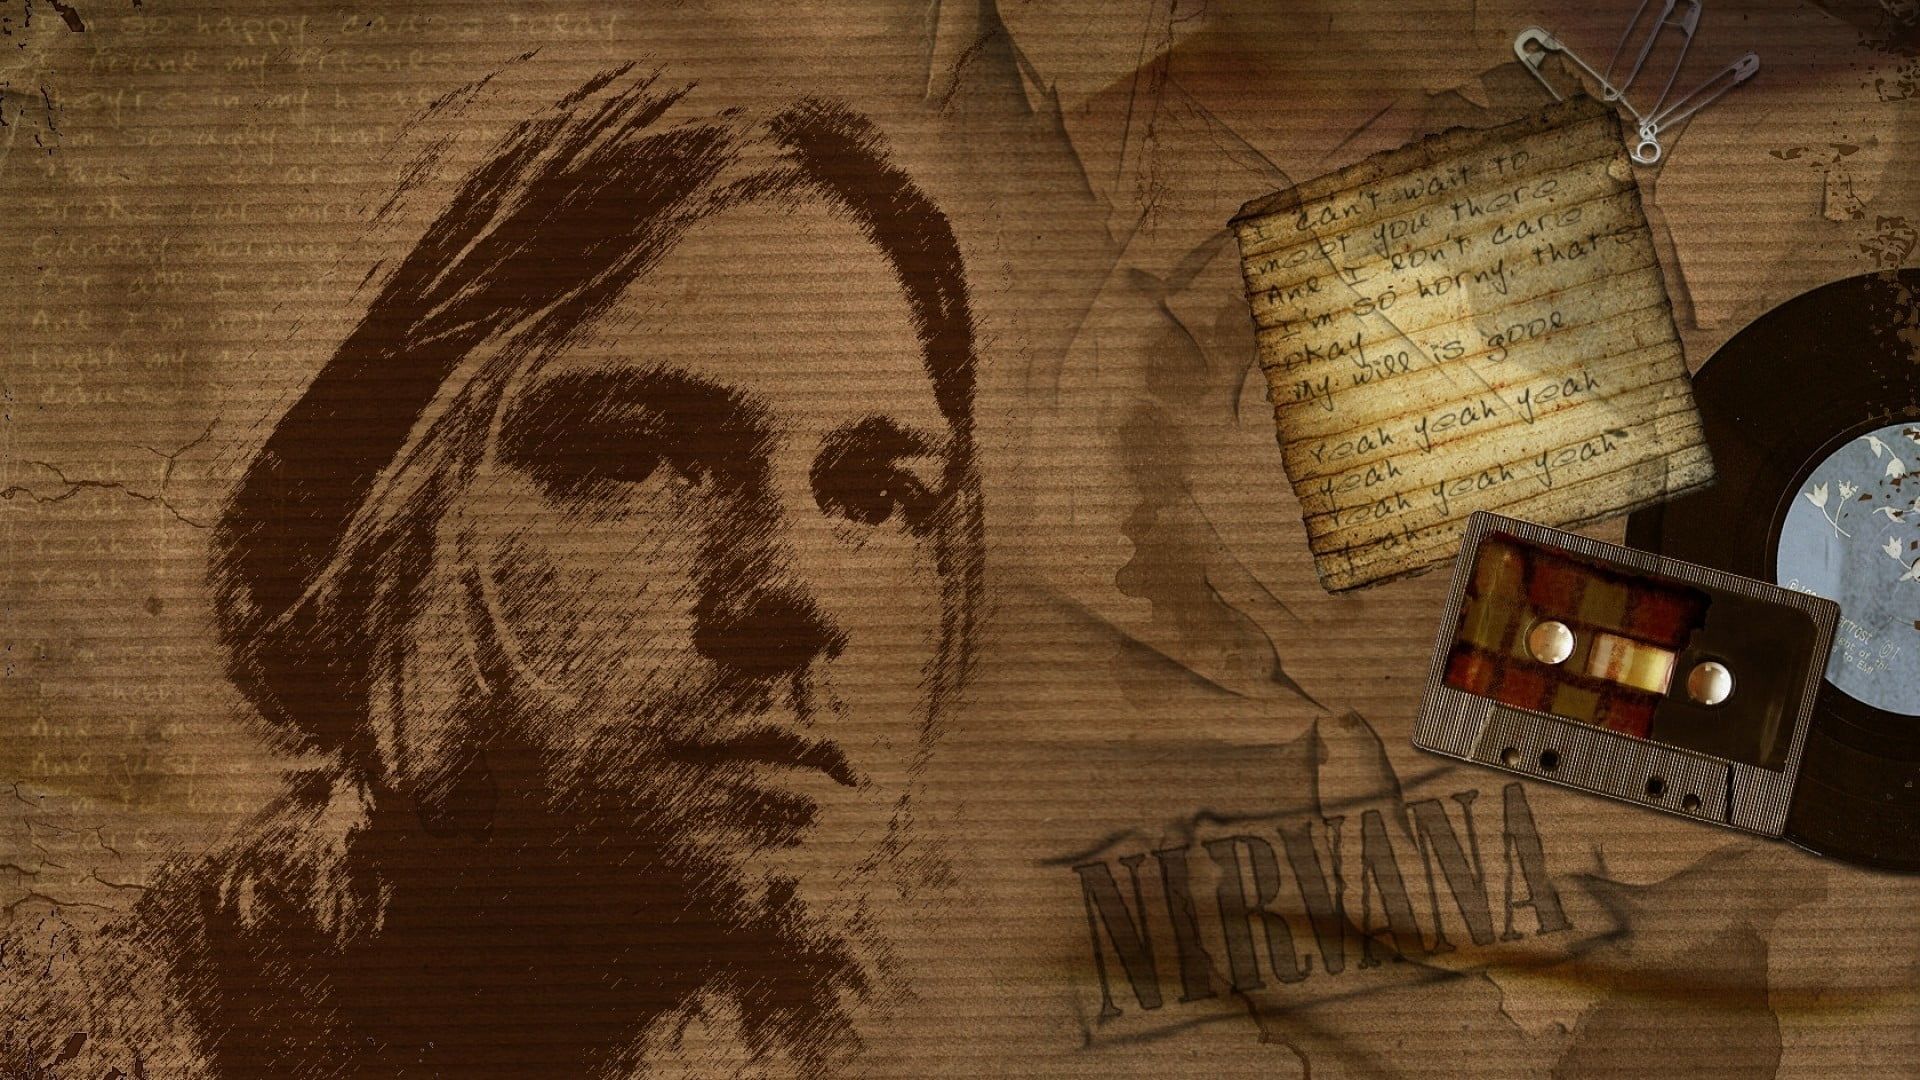 Kurt Coban Kurt Cobain #Nirvana #cassette #paper P #wallpaper #hdwallpaper #desktop. Nirvana wallpaper, Nirvana, Wallpaper